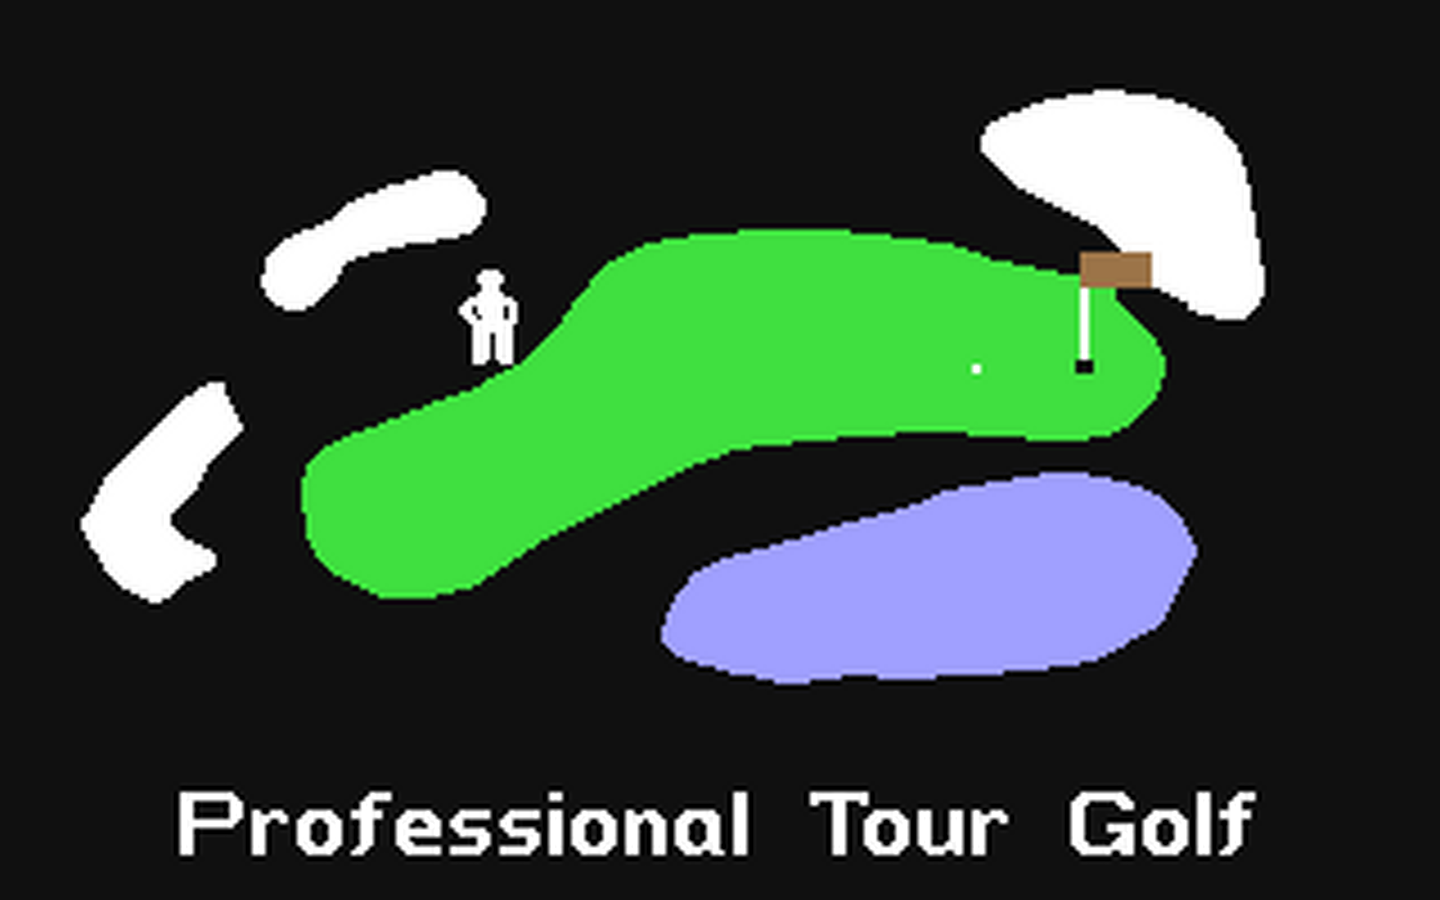 C64 GameBase Professional_Tour_Golf SSI_(Strategic_Simulations,_Inc.) 1983